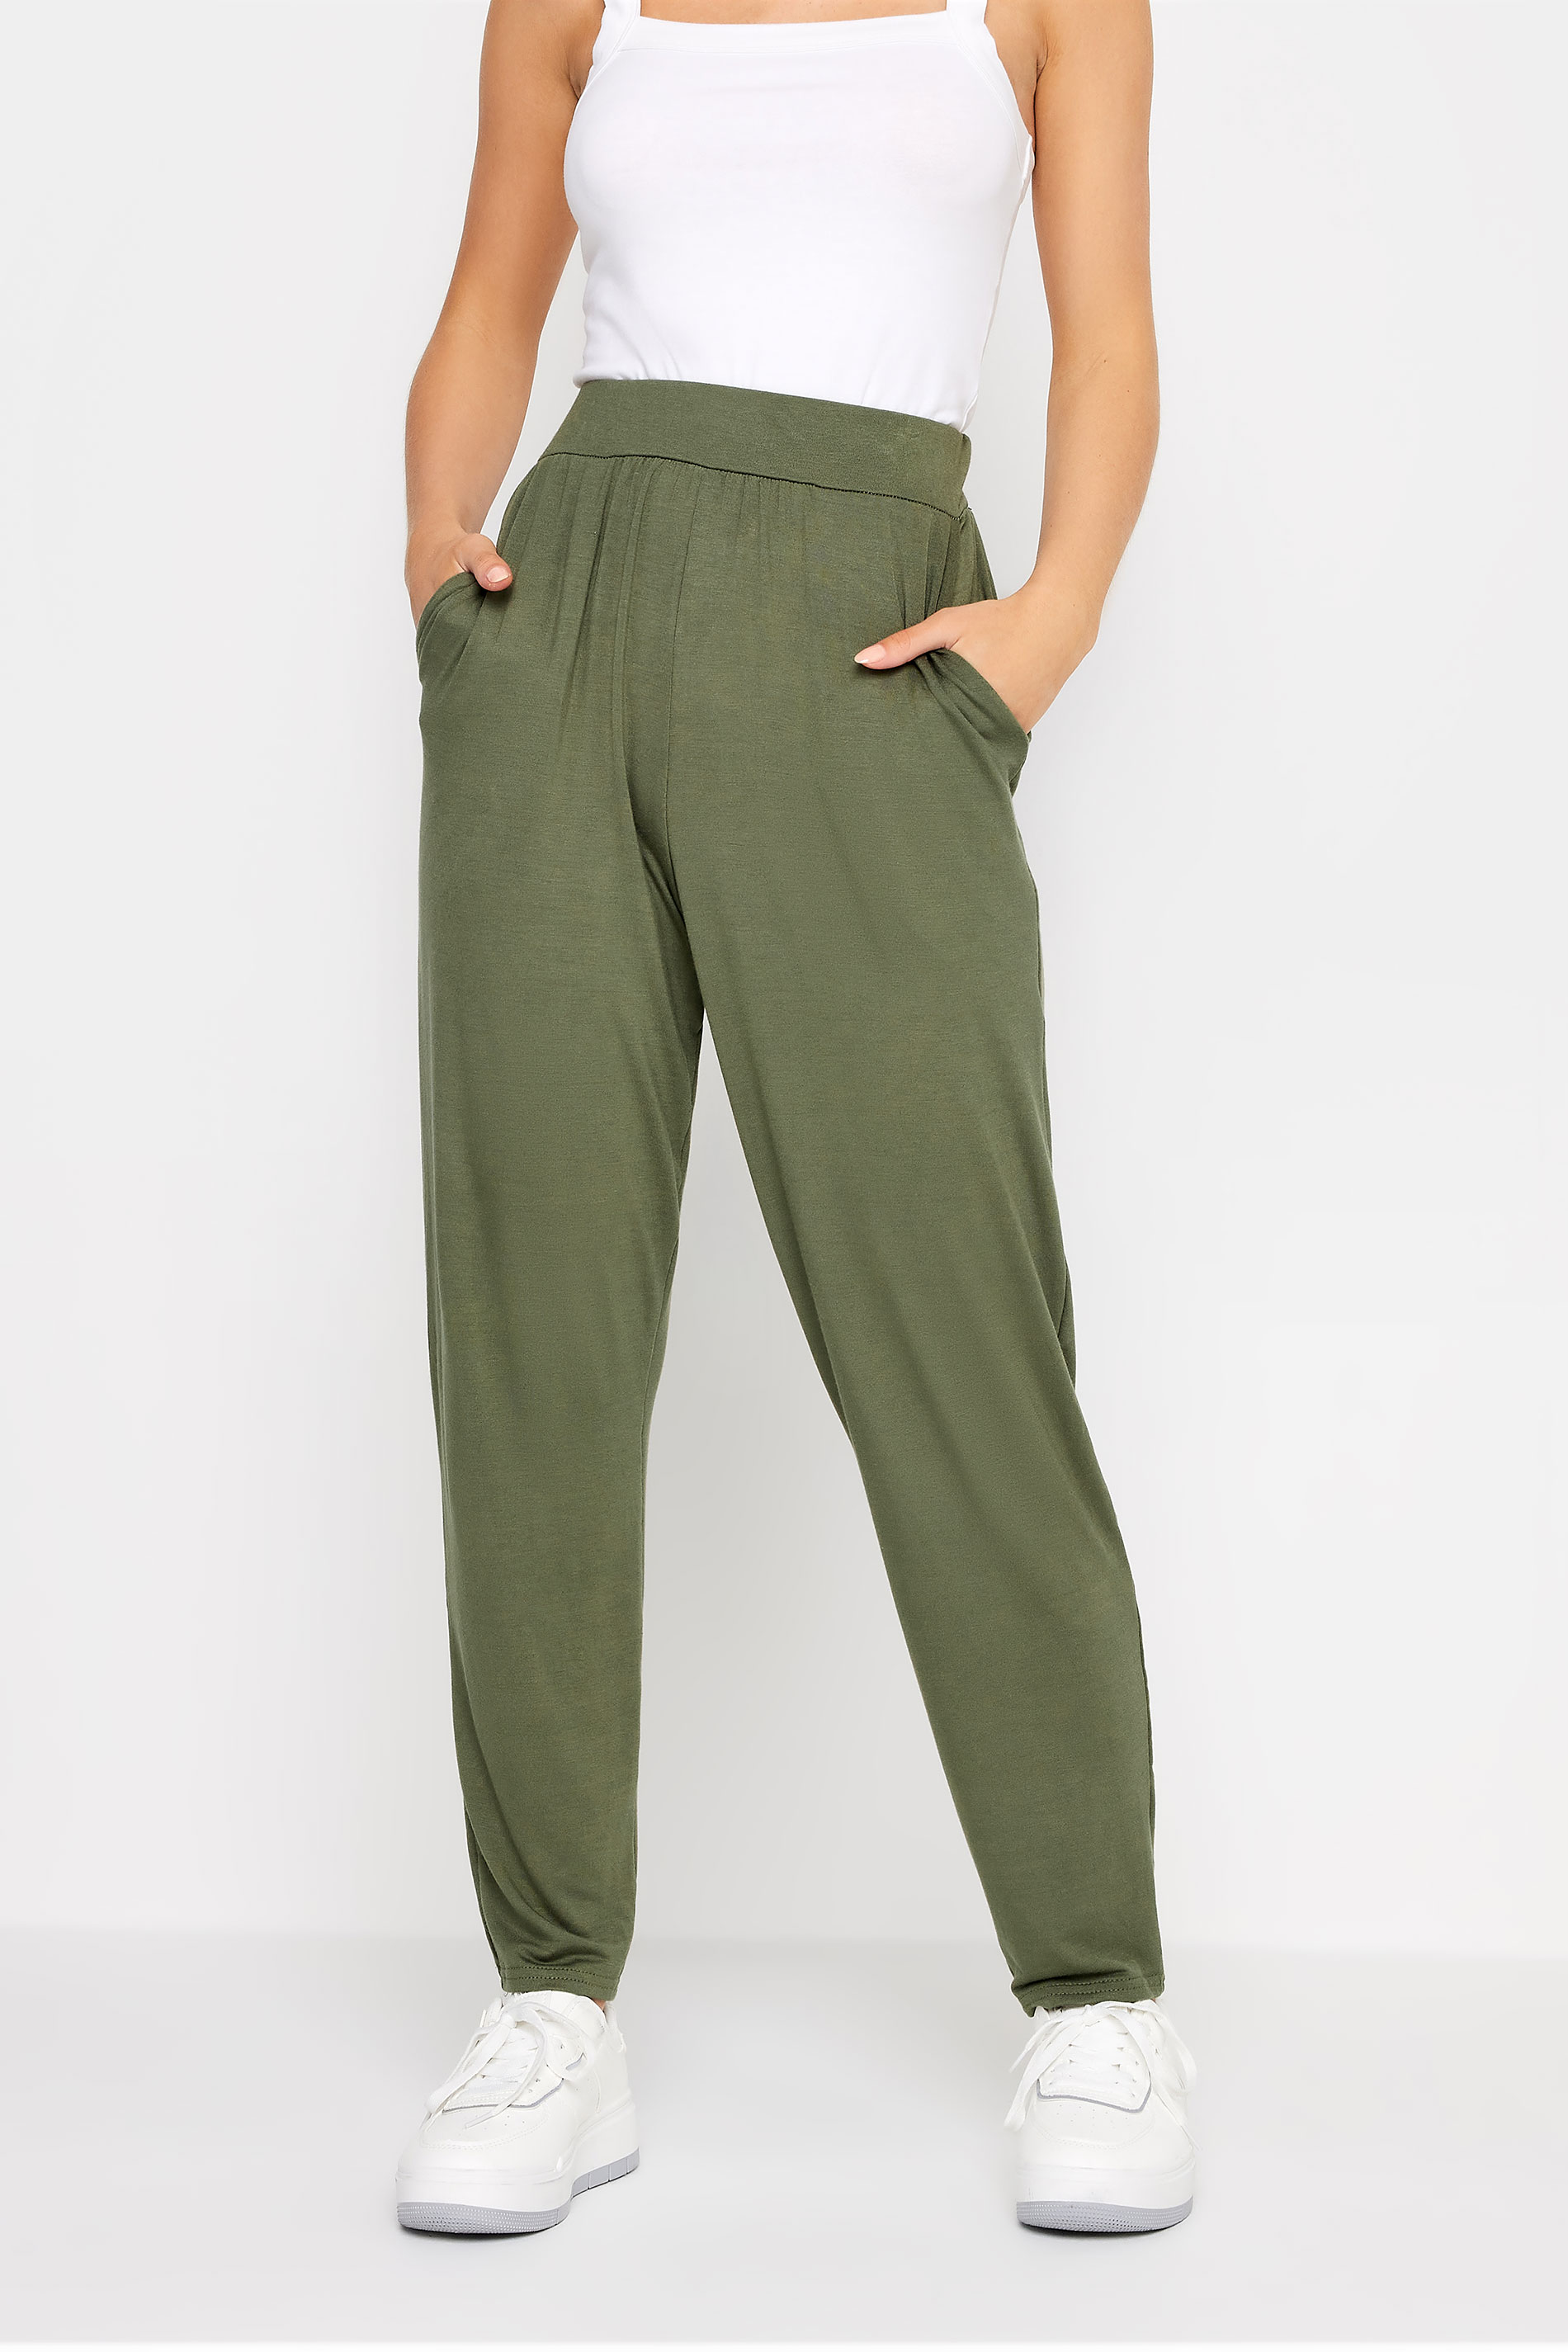 PixieGirl Petite Womens Khaki Green Harem Trousers | PixieGirl 2